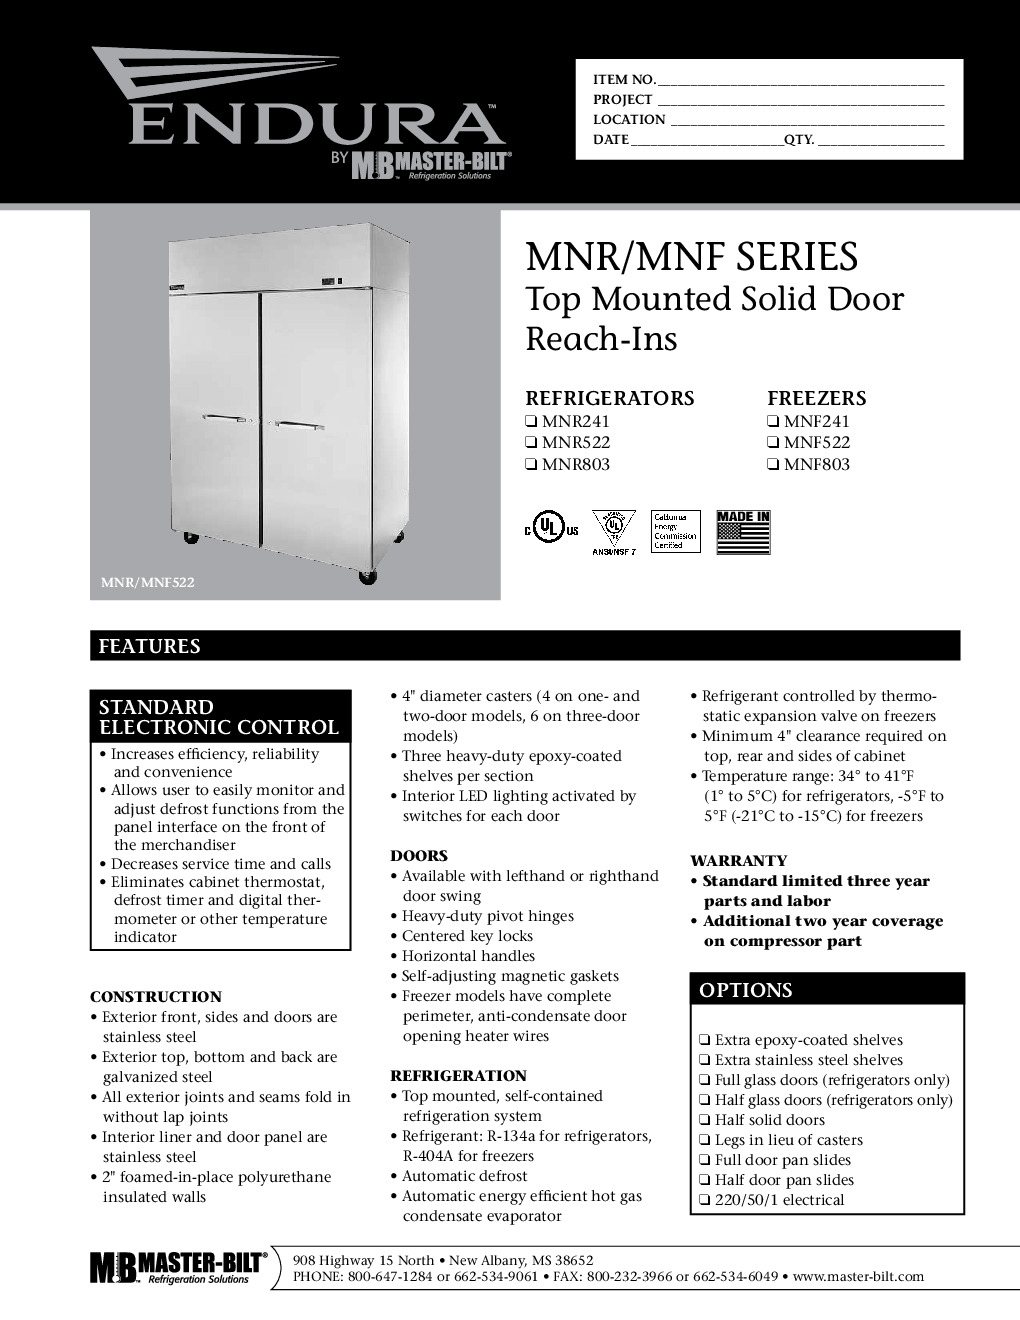 Master-Bilt MNR803SSS/0 Reach-In Refrigerator